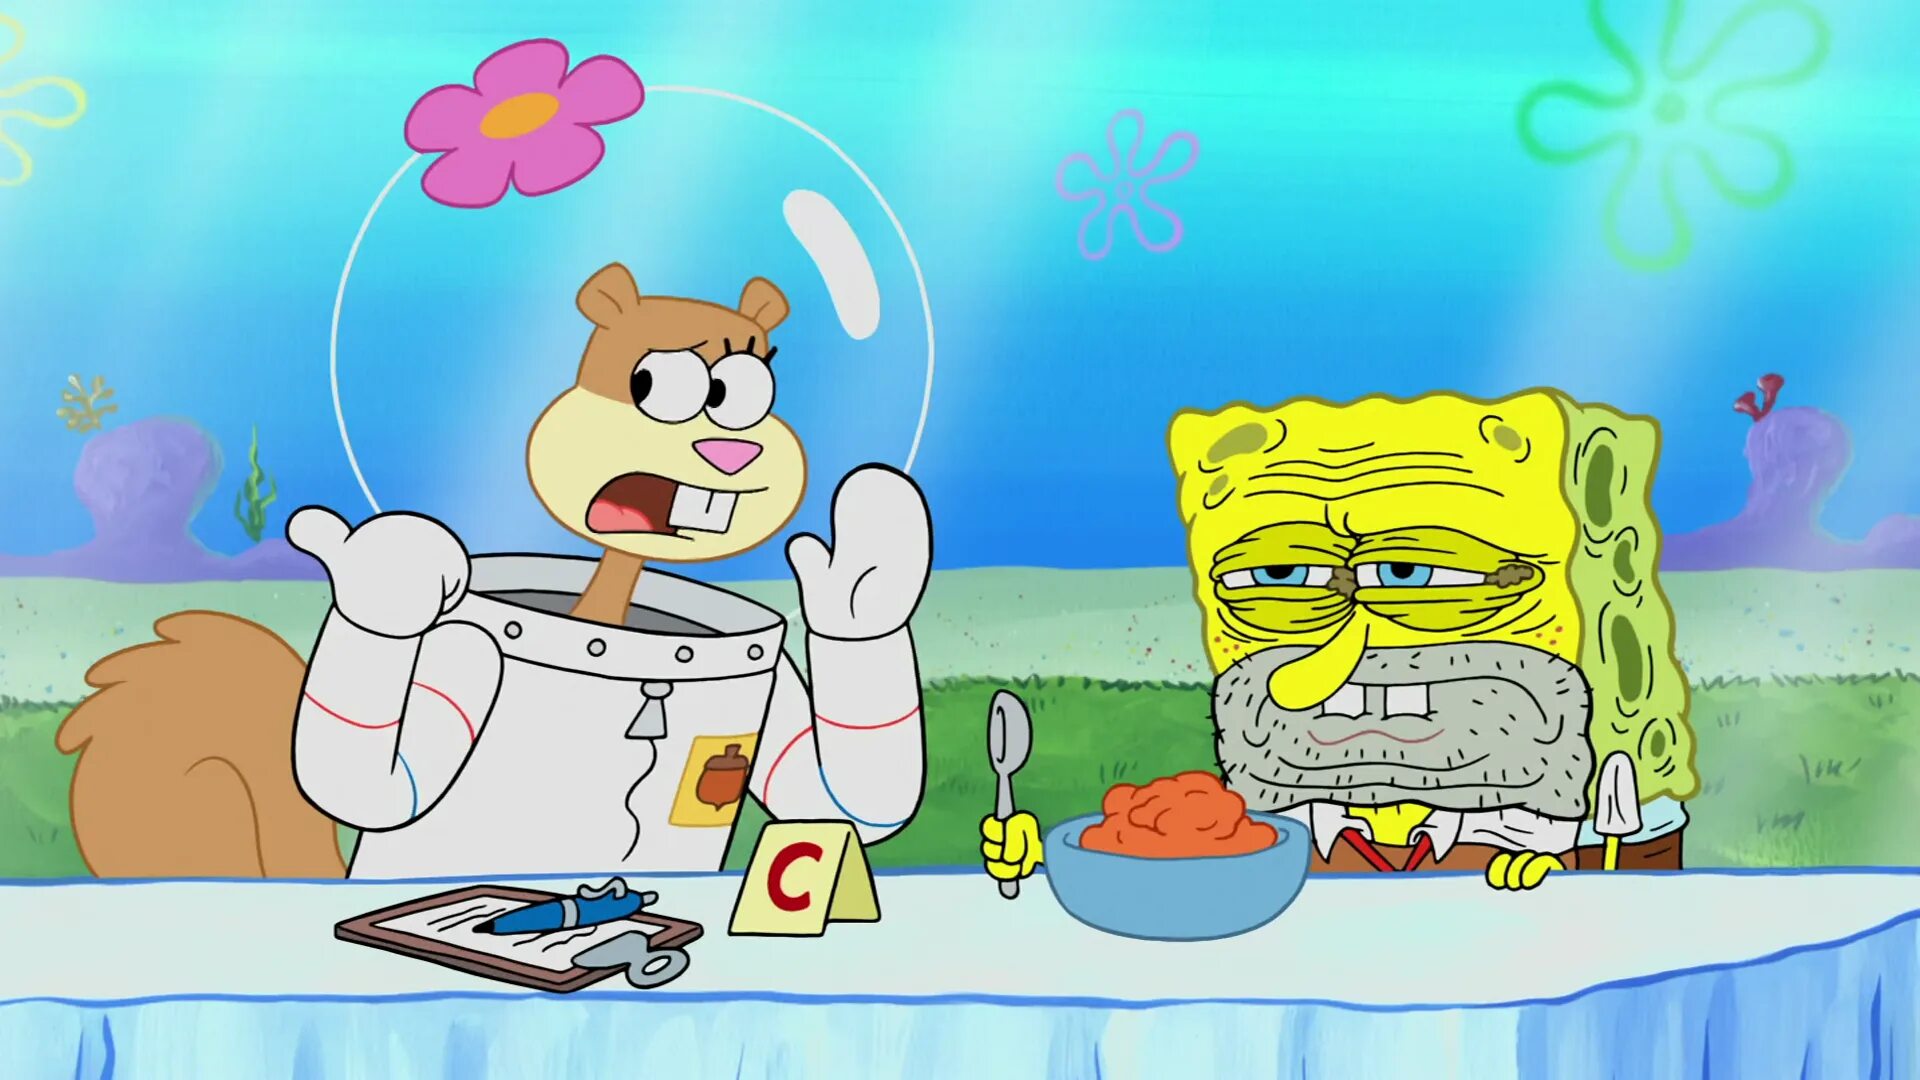 Spongebob sandy. Губка Боб и Сэнди. Сэнди Спанч Боб. Сэнди из губки Боба. Спанч Боб и Сэнди арт.